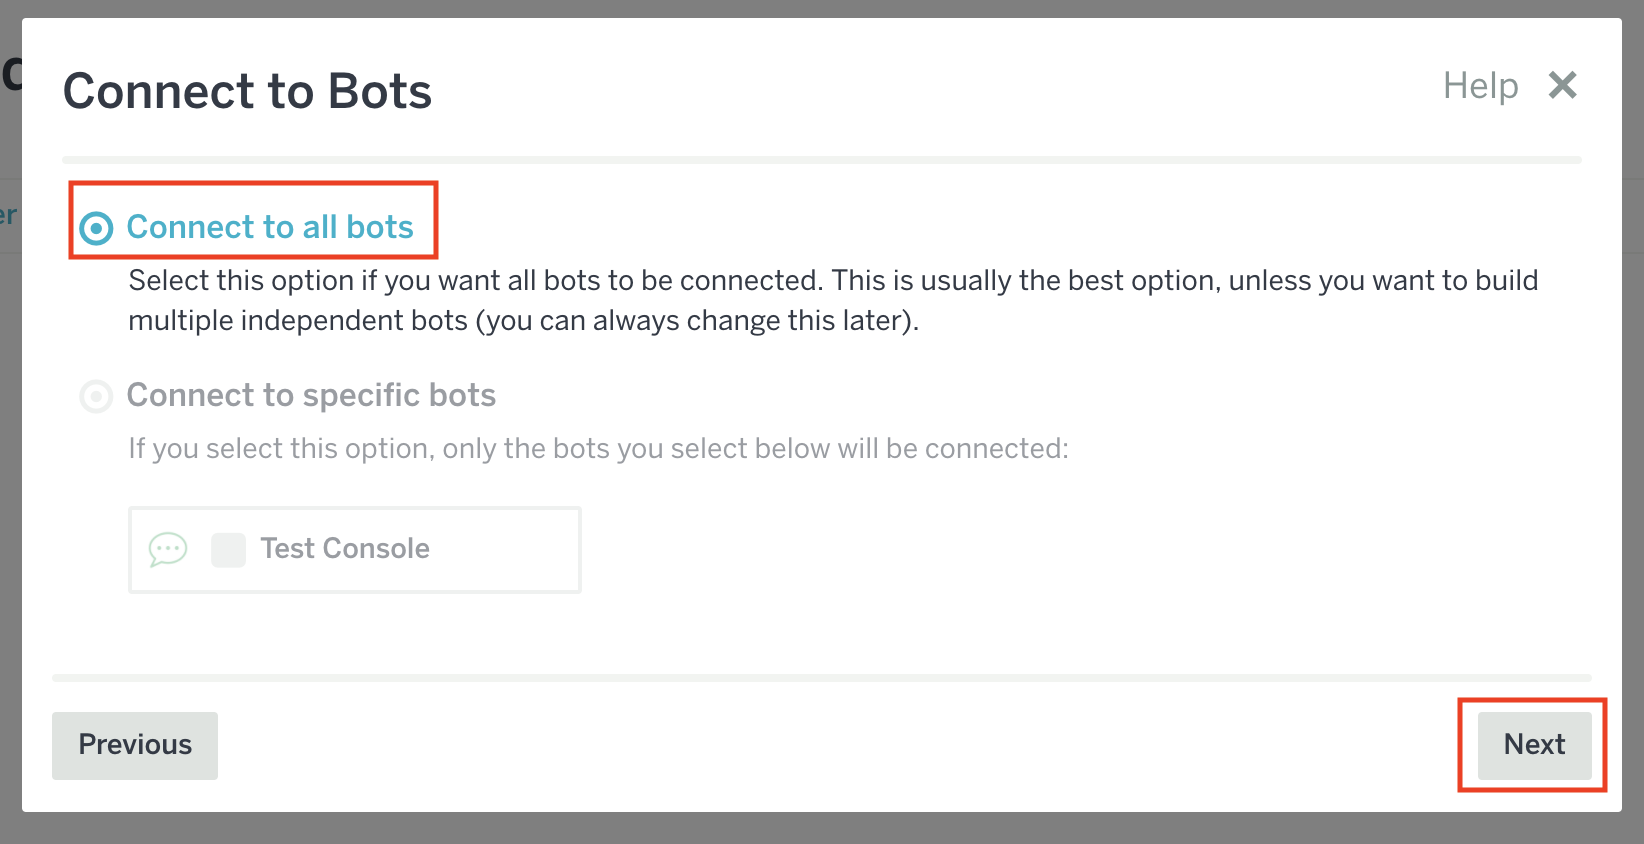 Connect to bots の画面が表示されている